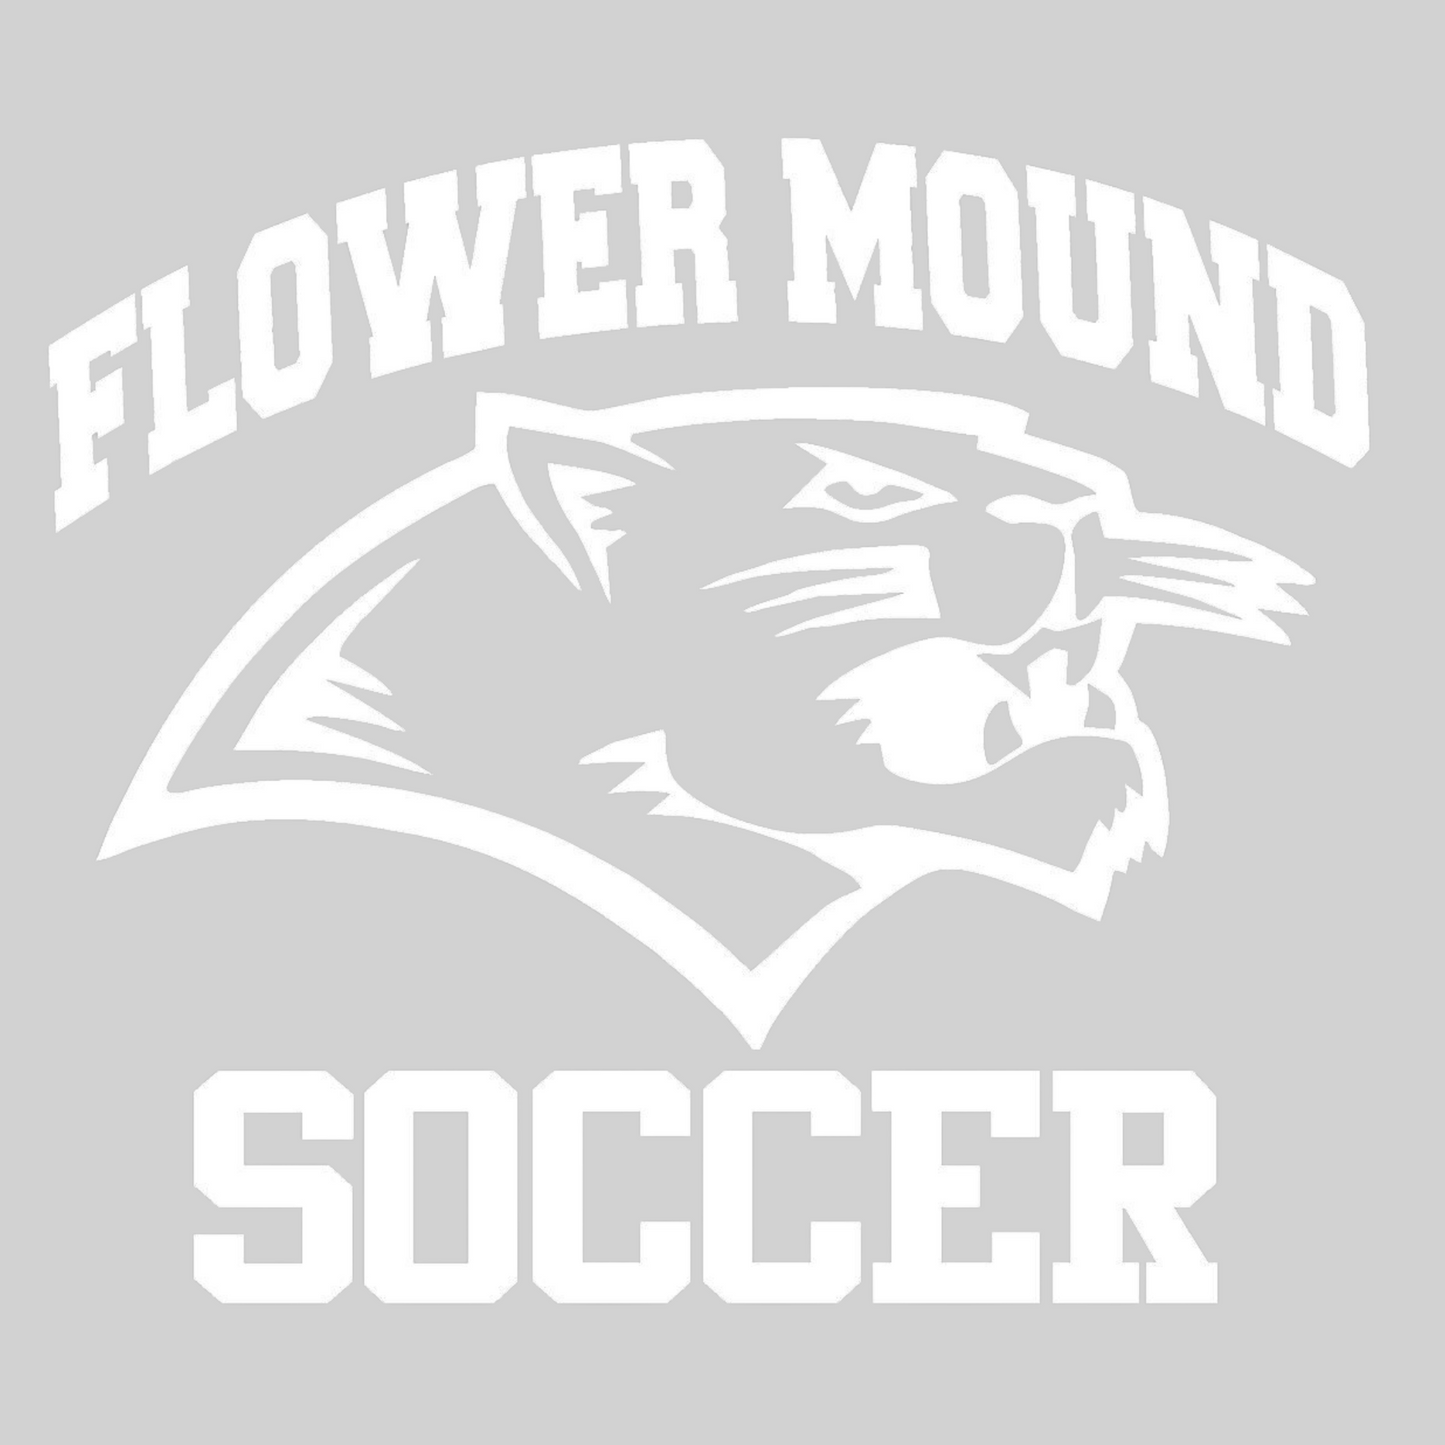 Flower Mound High School Boys Soccer Car Decal